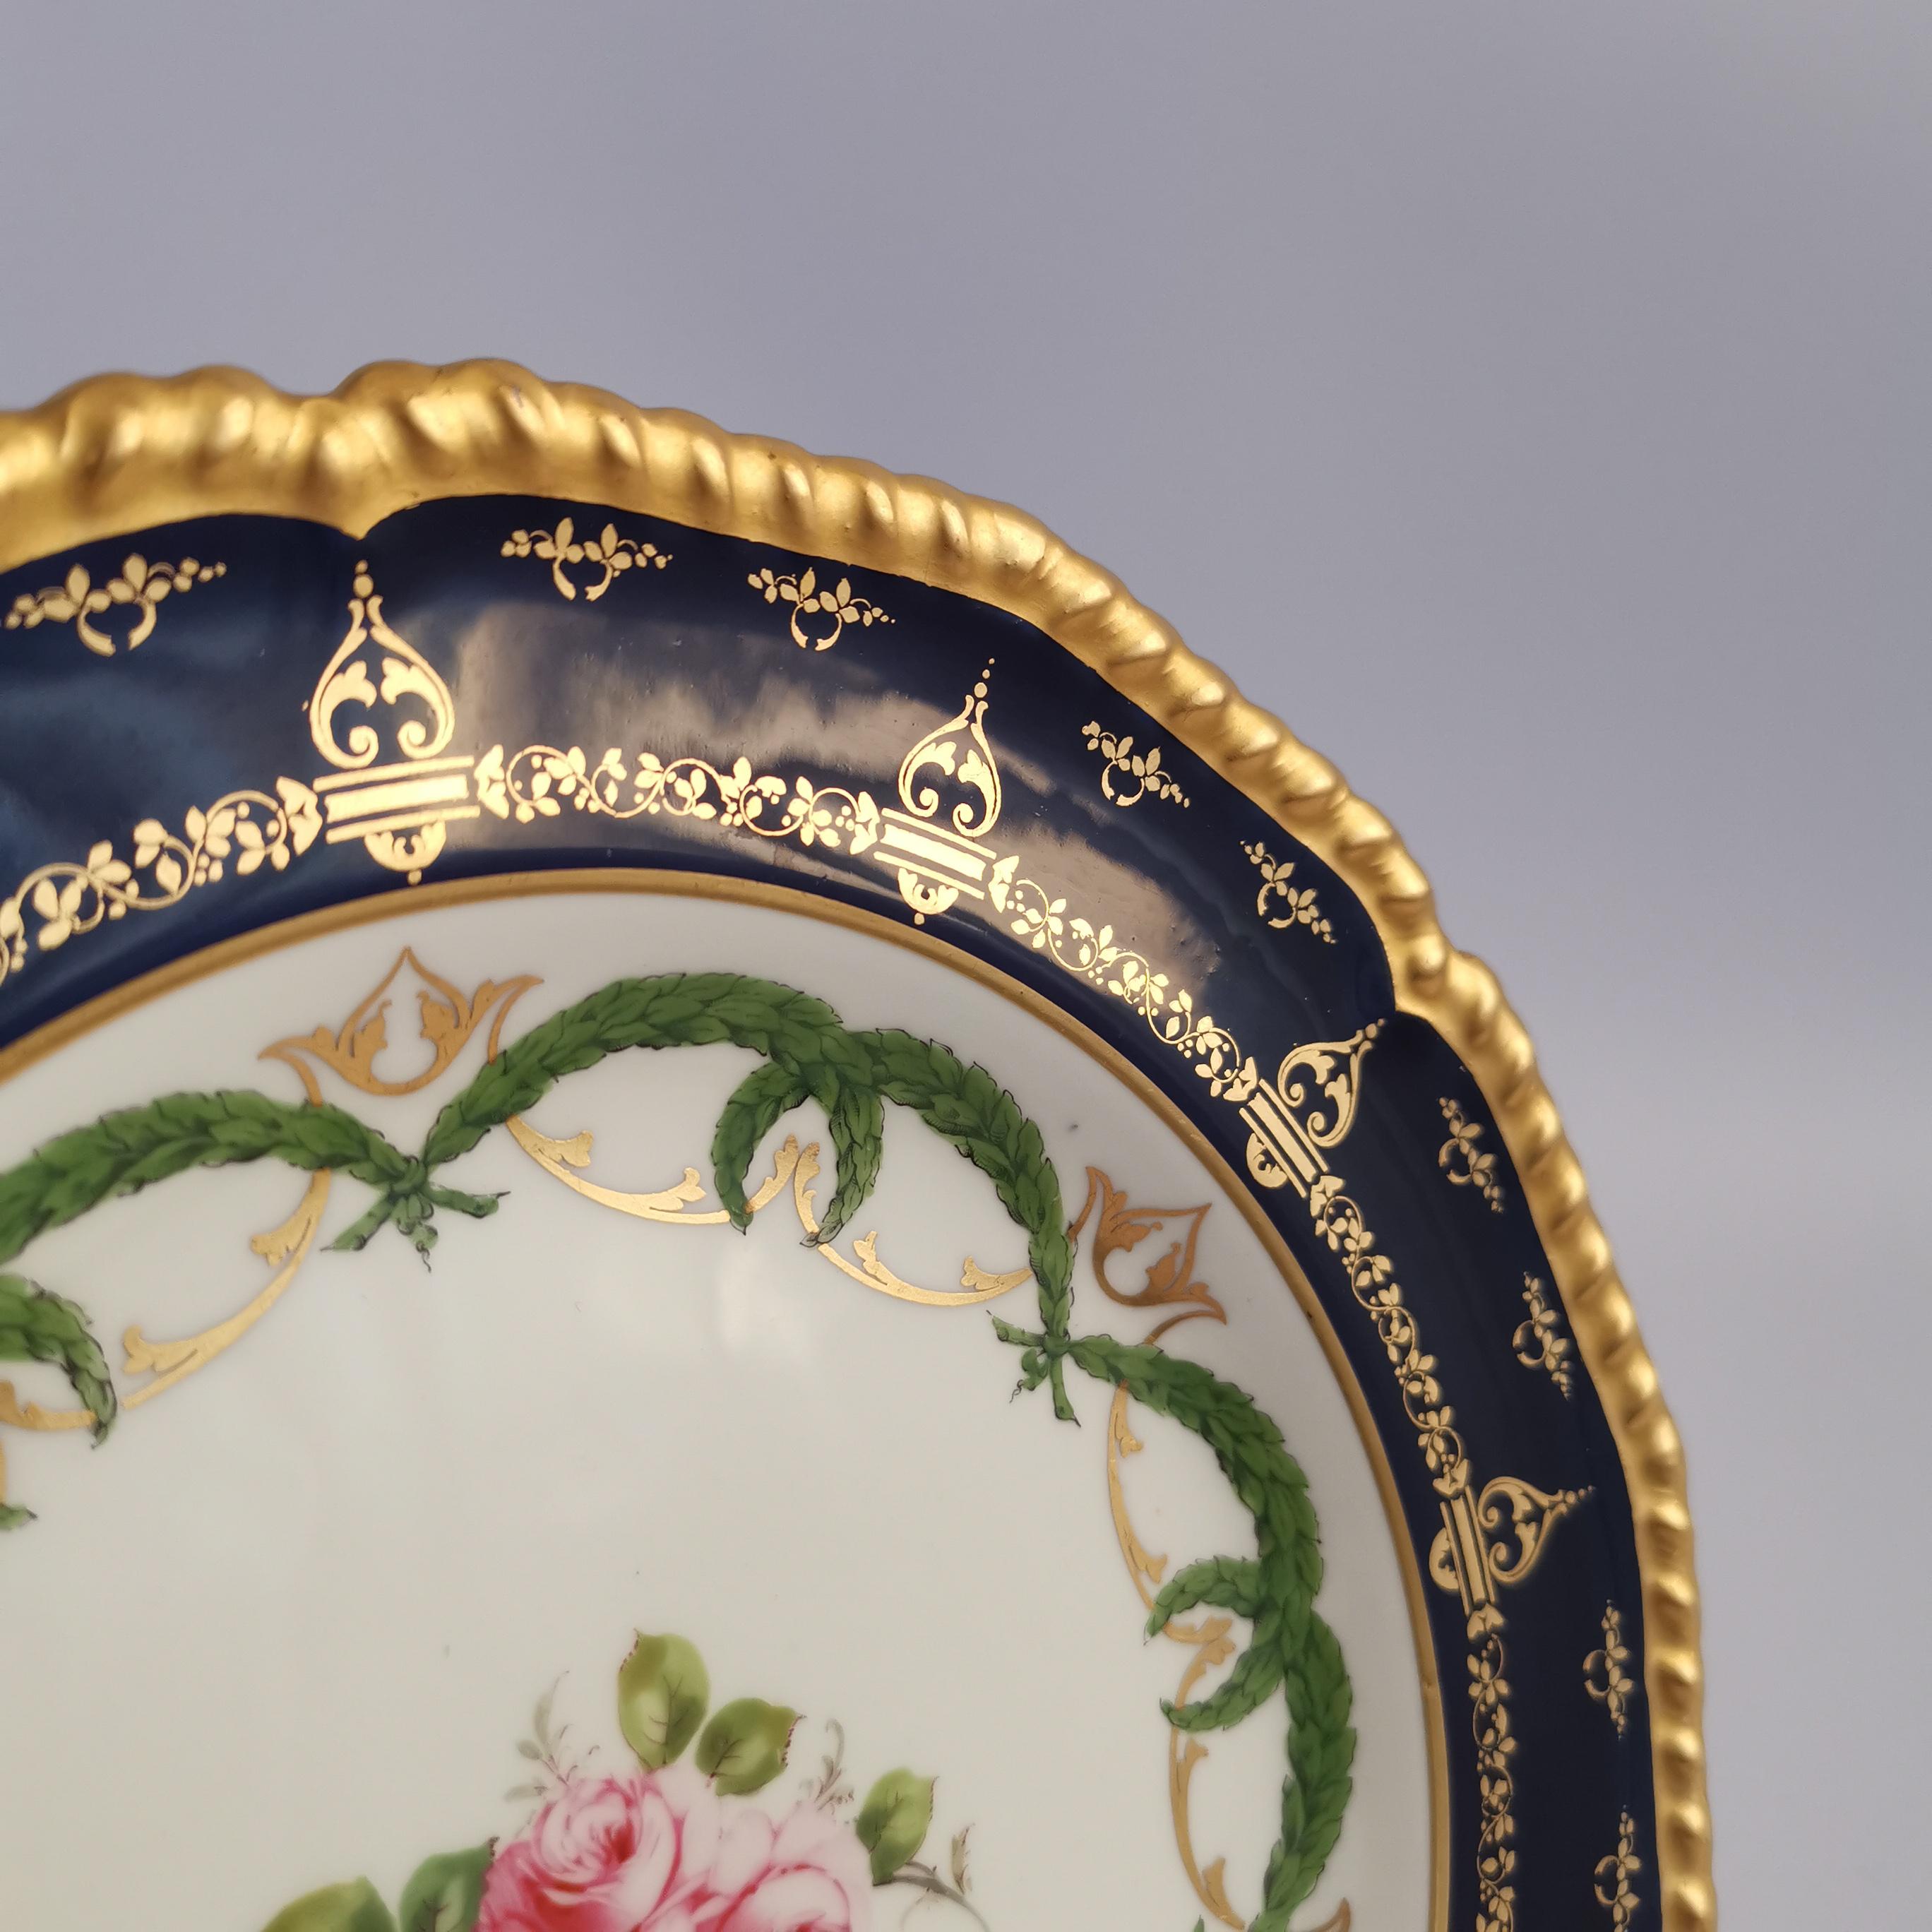 Royal Crown Derby Porcelain Plate, Cobalt Blue, Gilt and Billingsley Roses, 1907 1